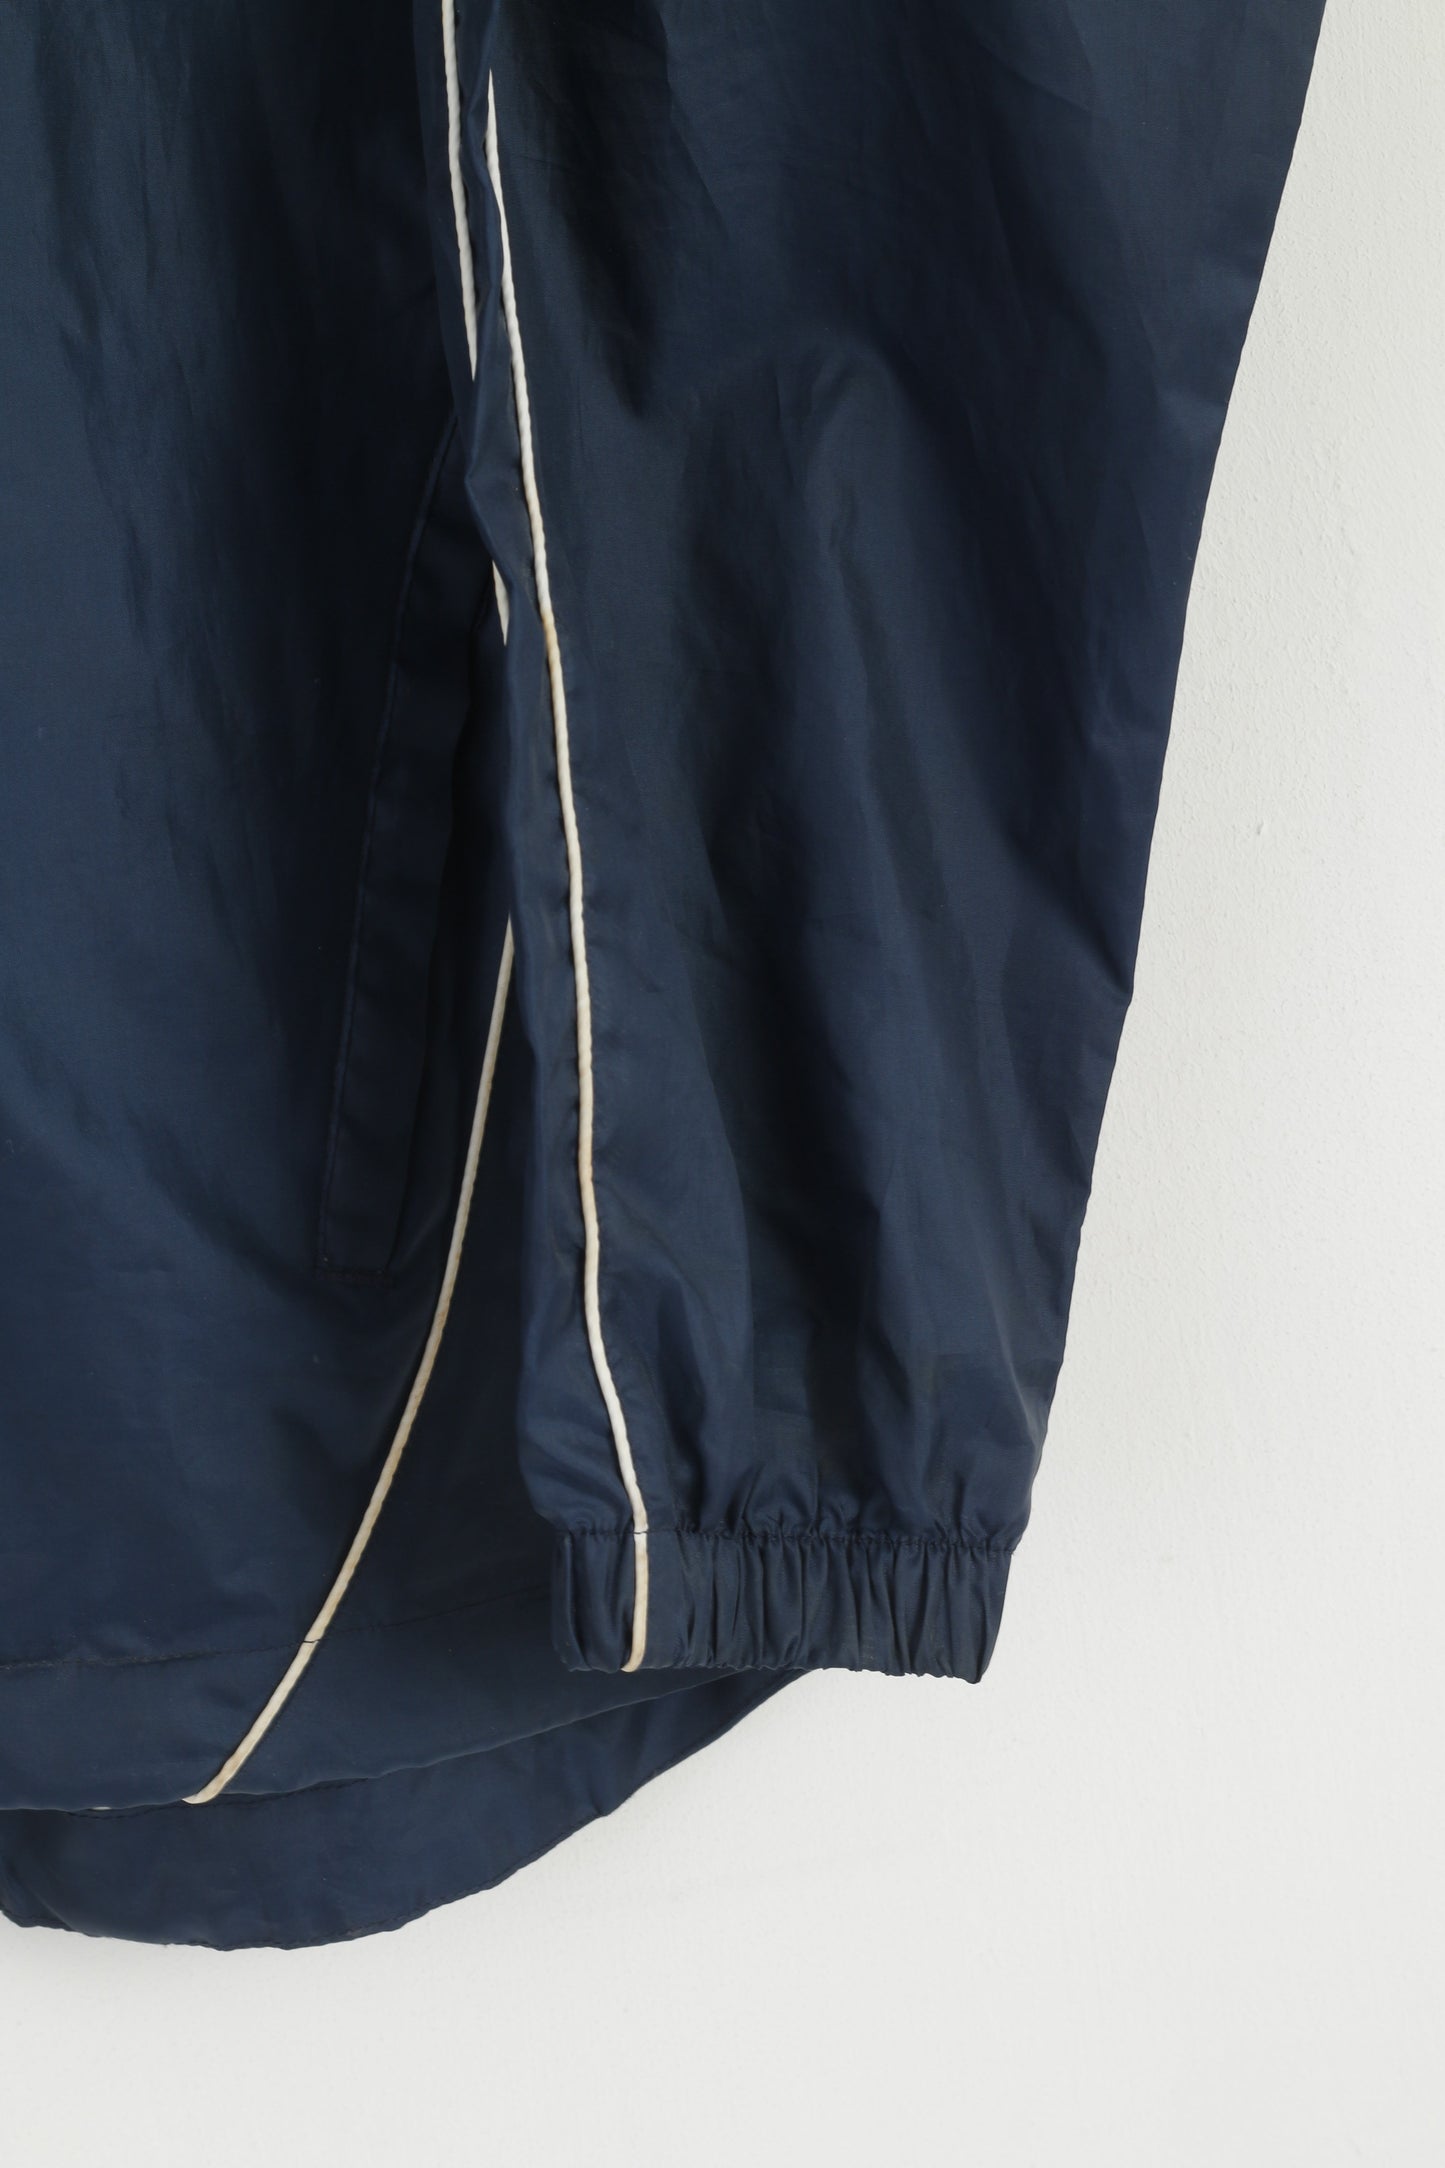 Umbro Men S Jacket Navy Lightweight Hooded Full Zipper Activewear Top